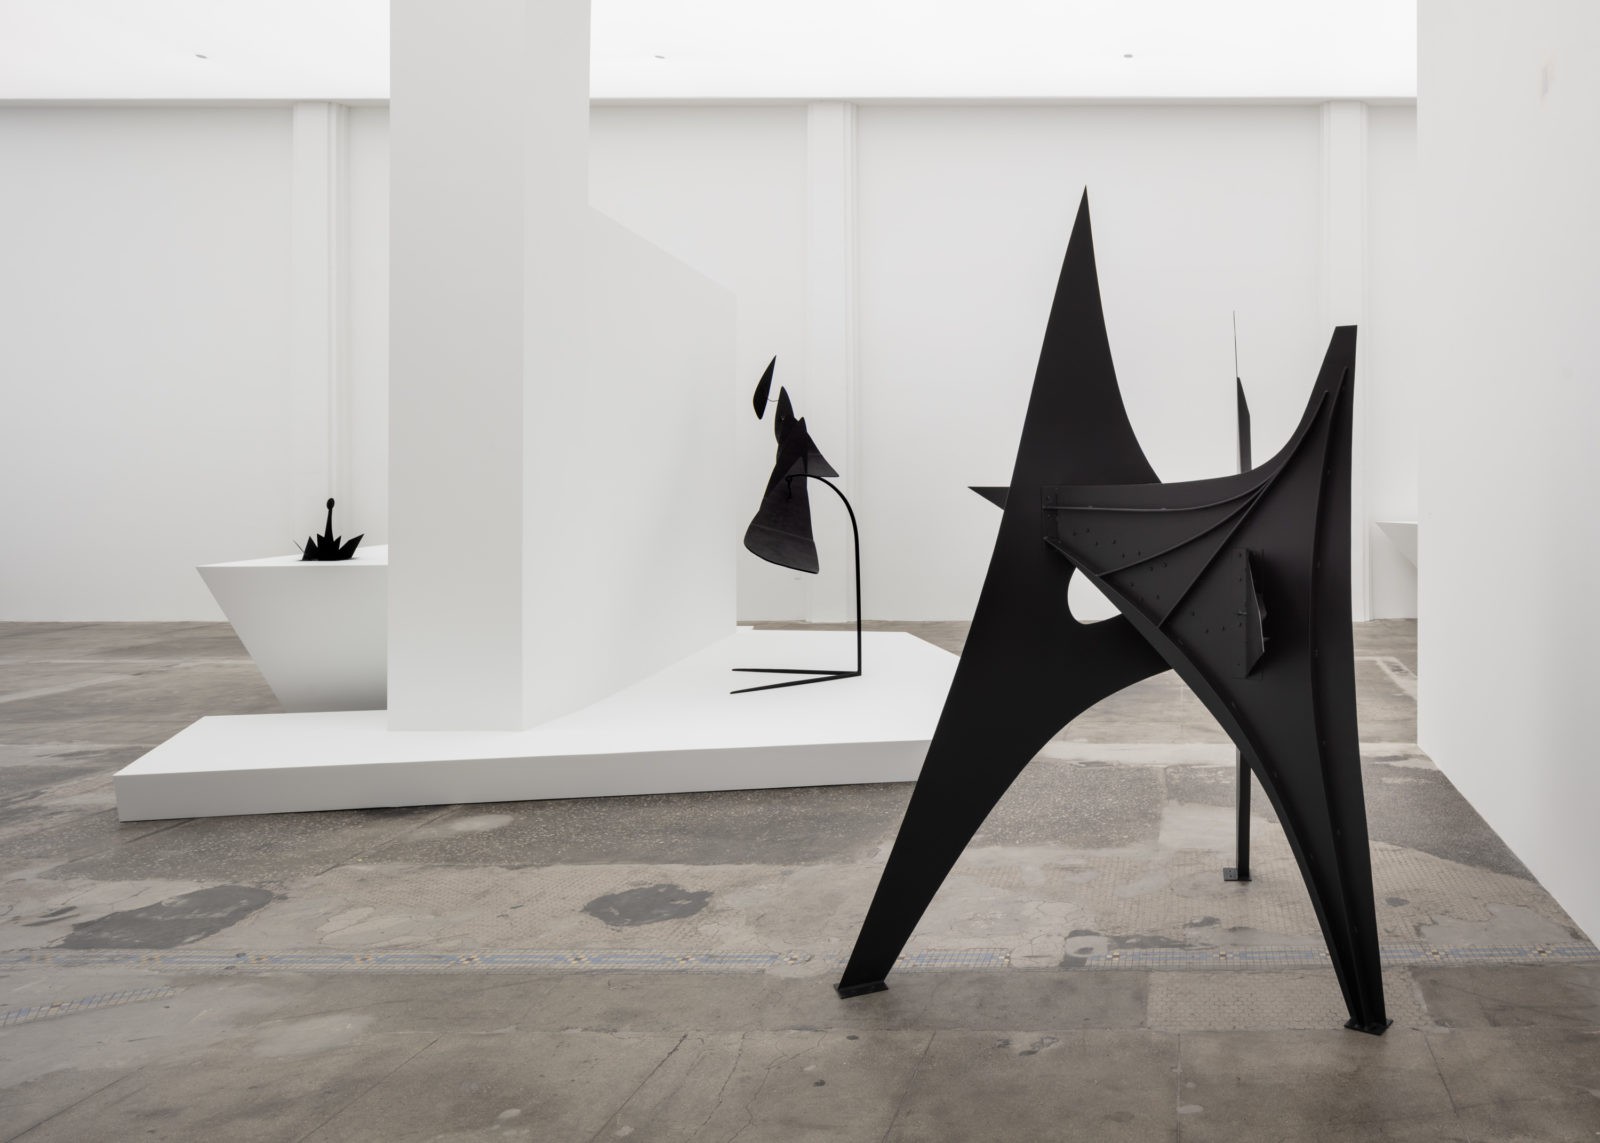 Hauser & Wirth, Los Angeles (2018) | Calder Foundation